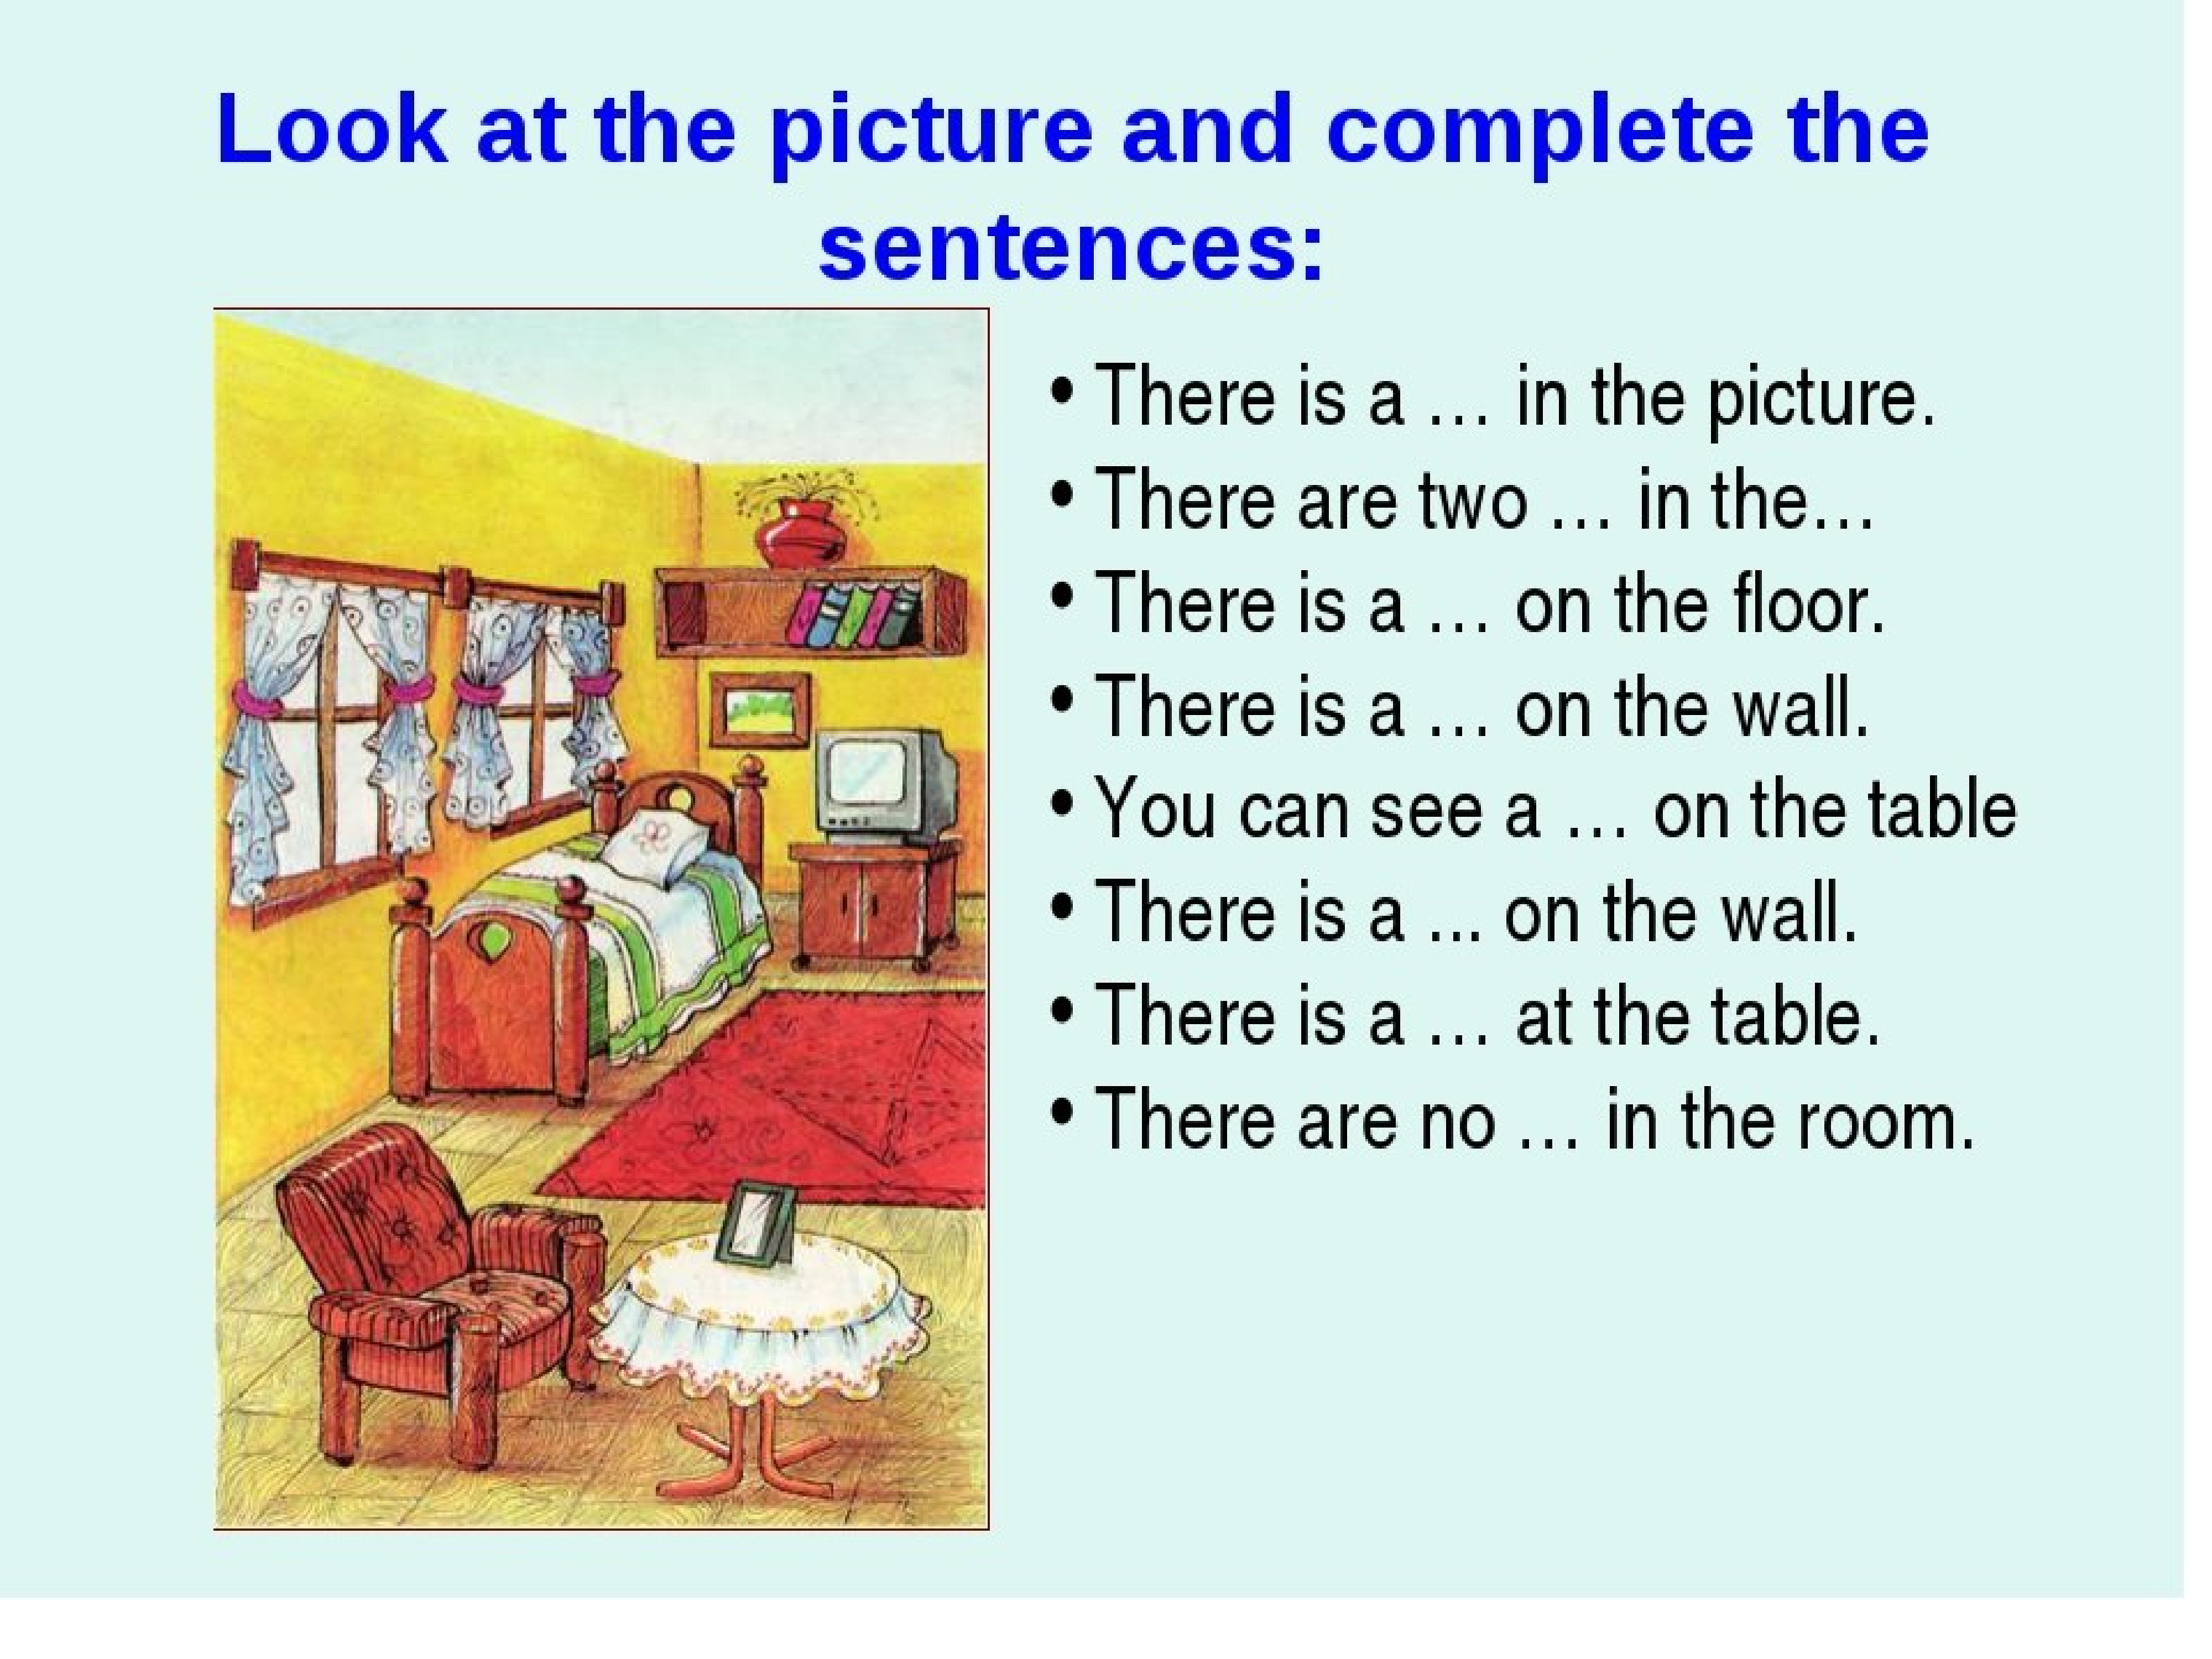 правила описания картинки на английском